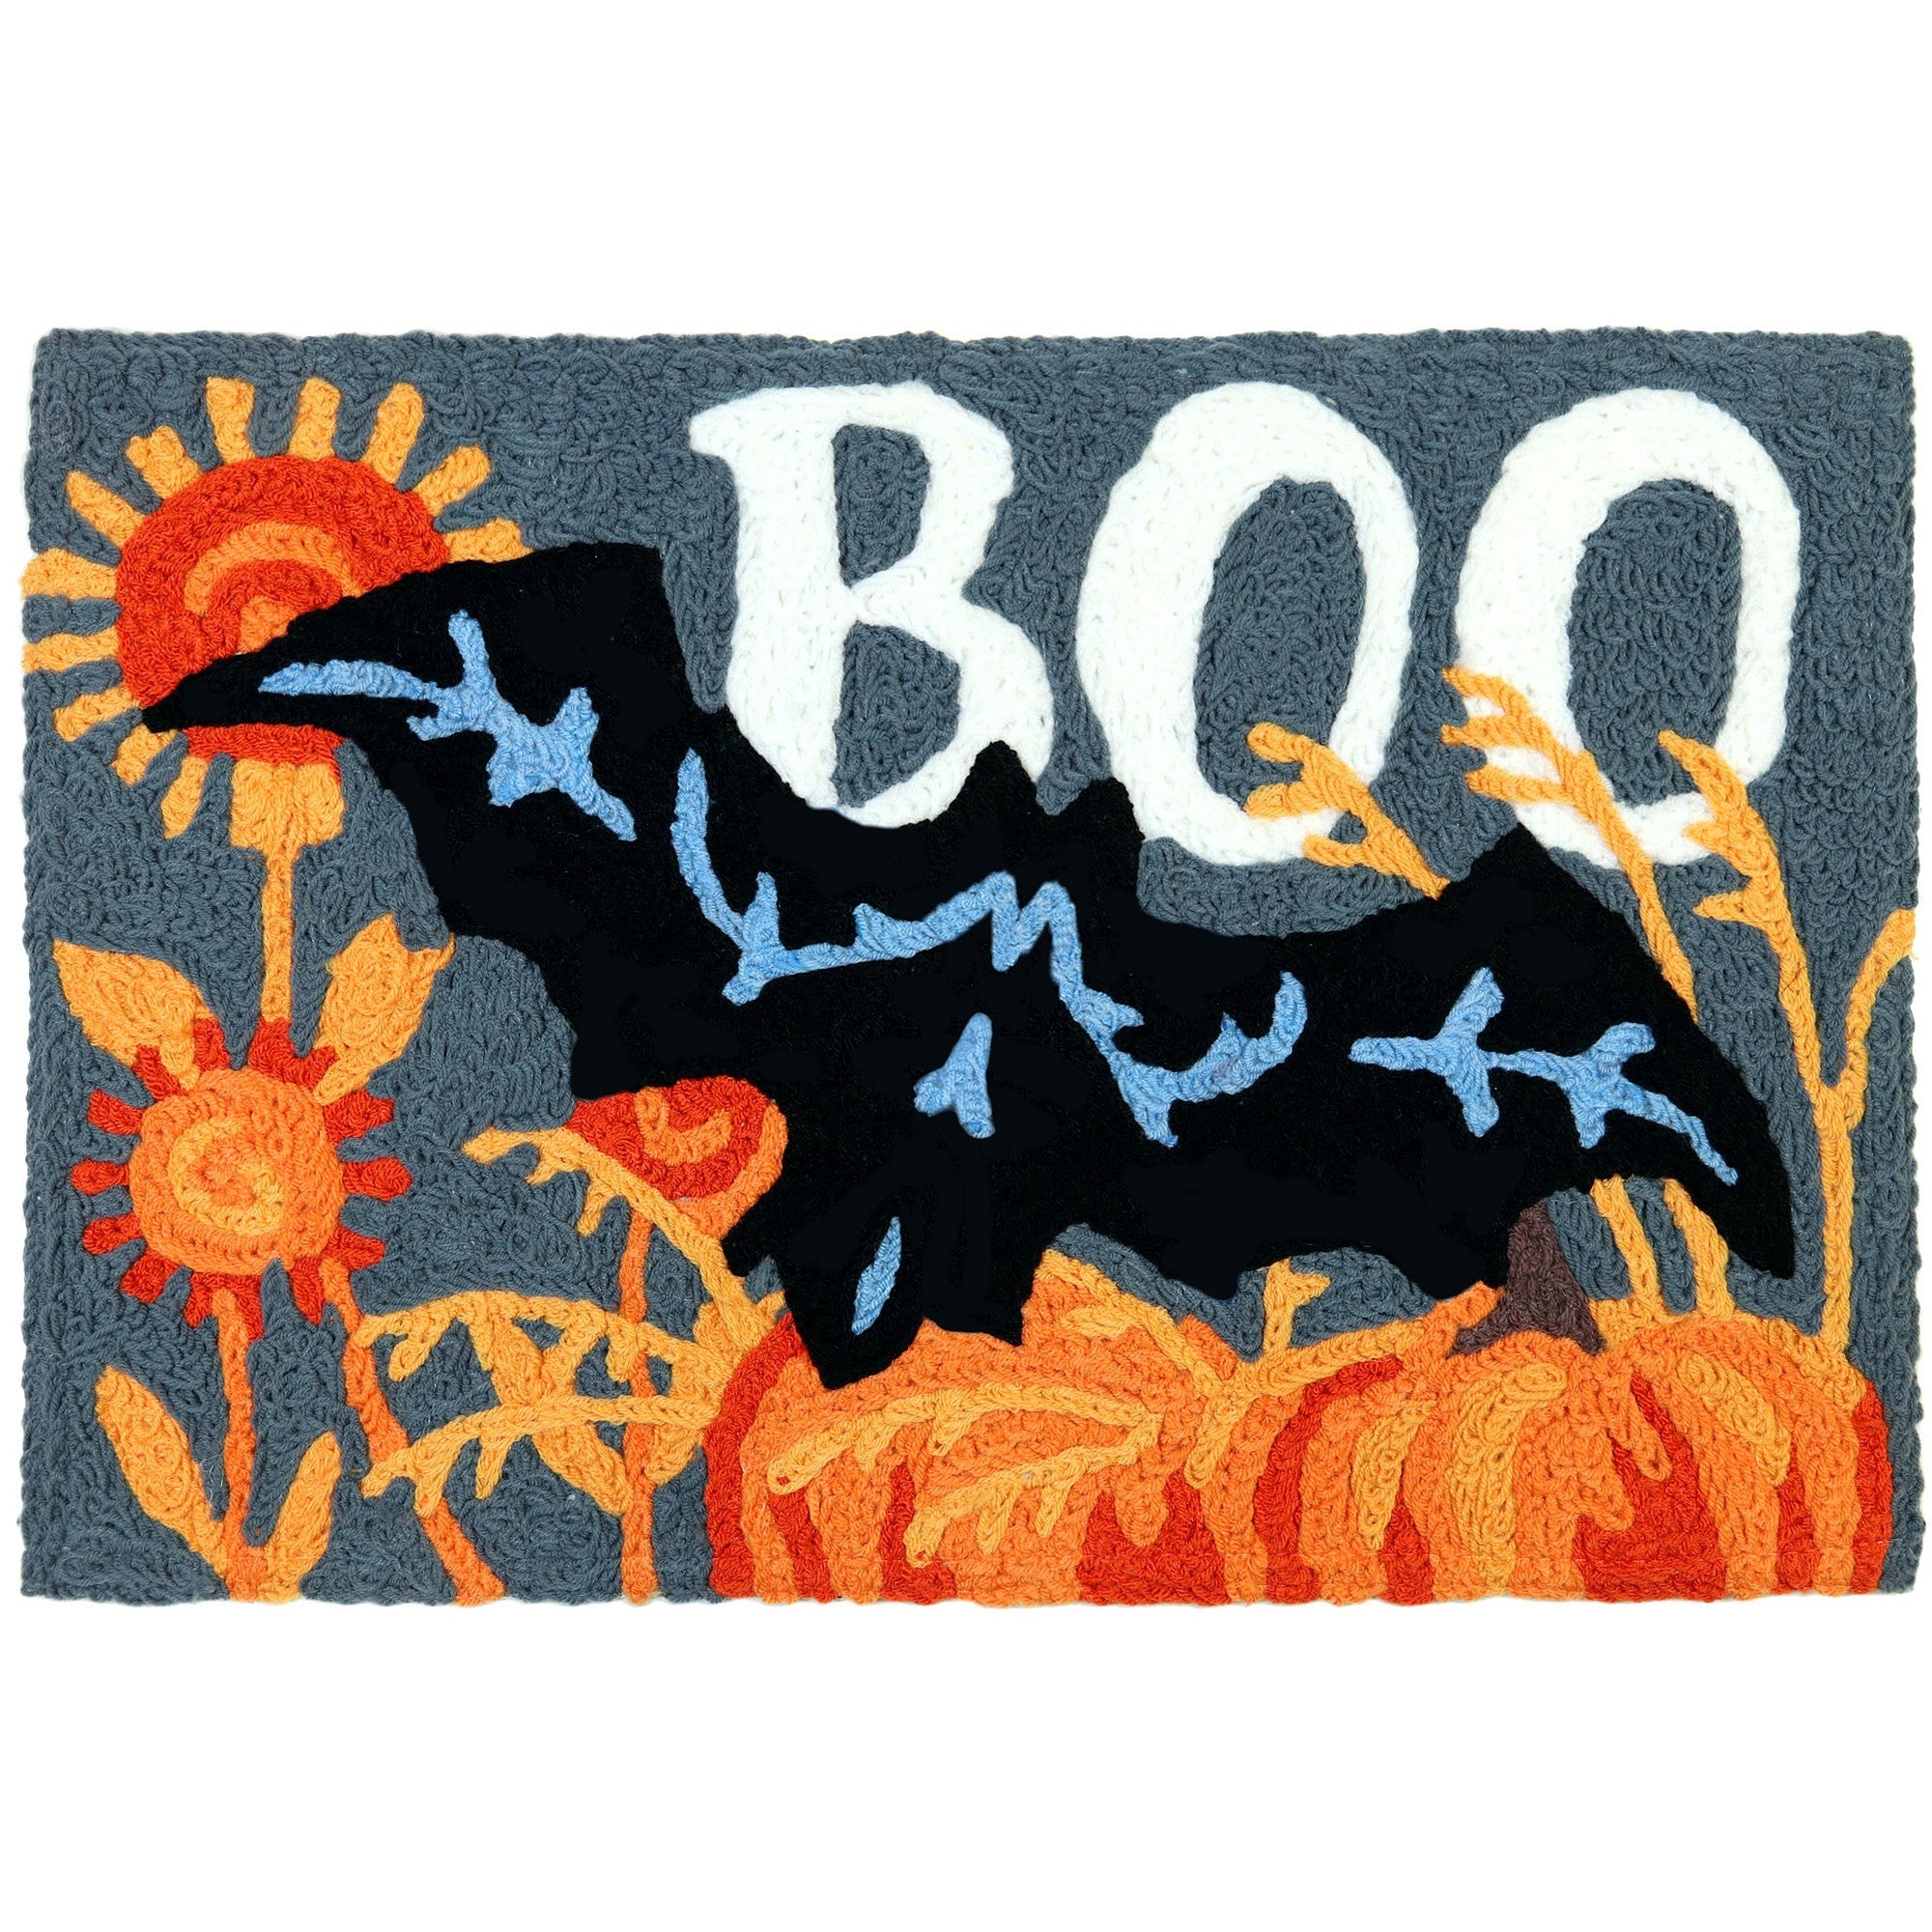 Bat Boo Jellybean Accent Rug with Black Bat Halloween Rug 20"x30" Washable Rug Doormat